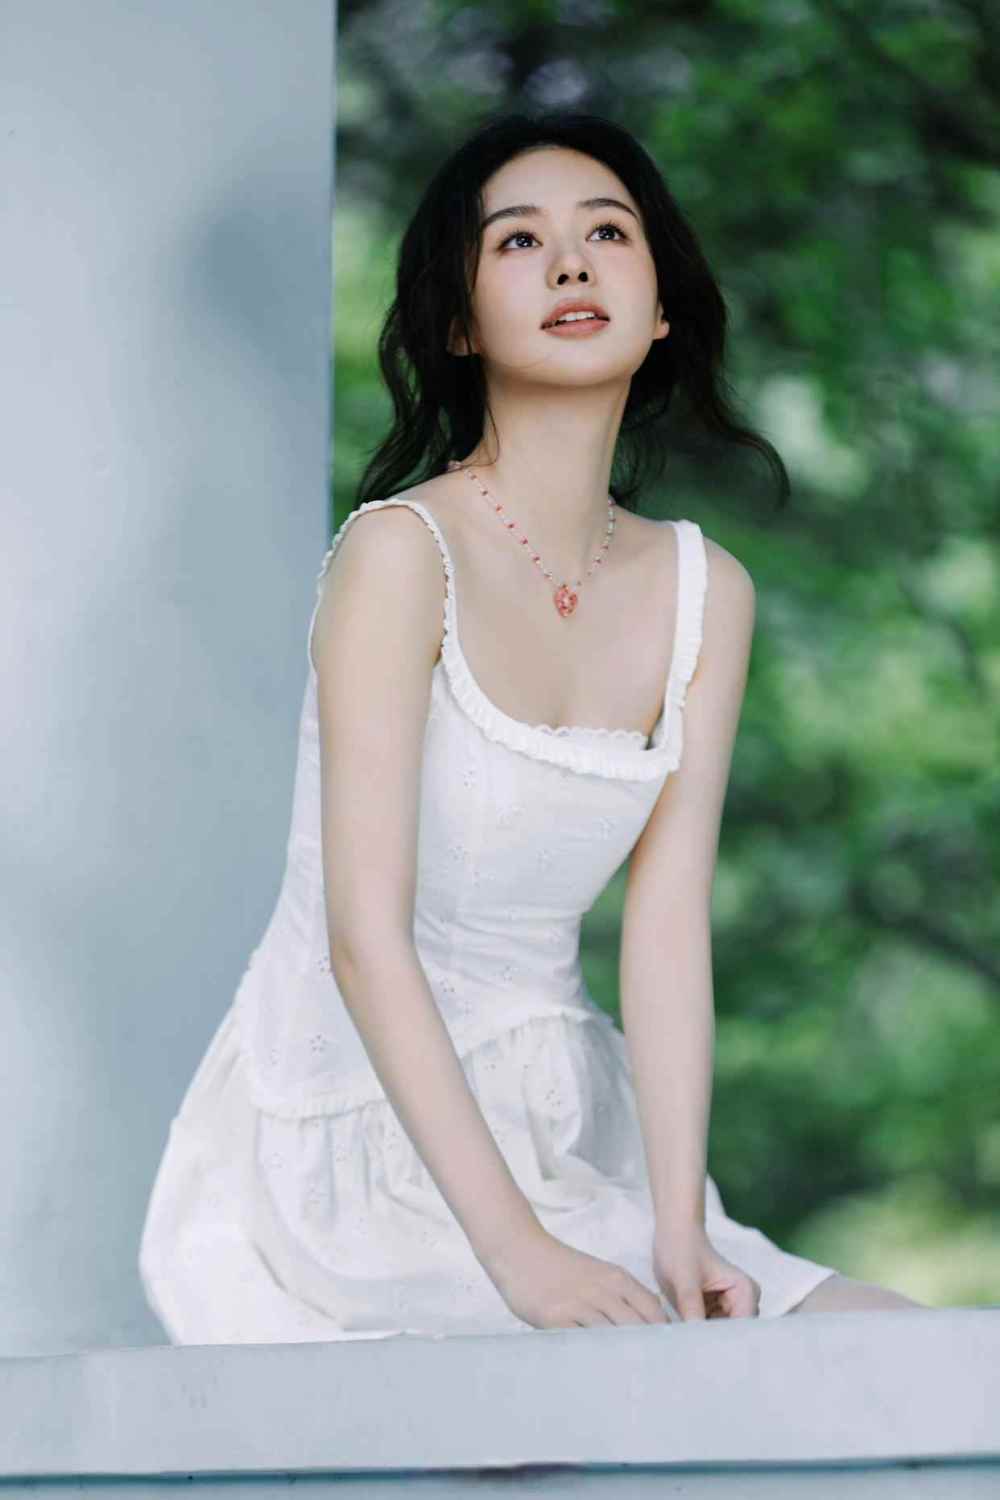 Hehuizi Zheng Sexy and Hottest Photos , Latest Pics